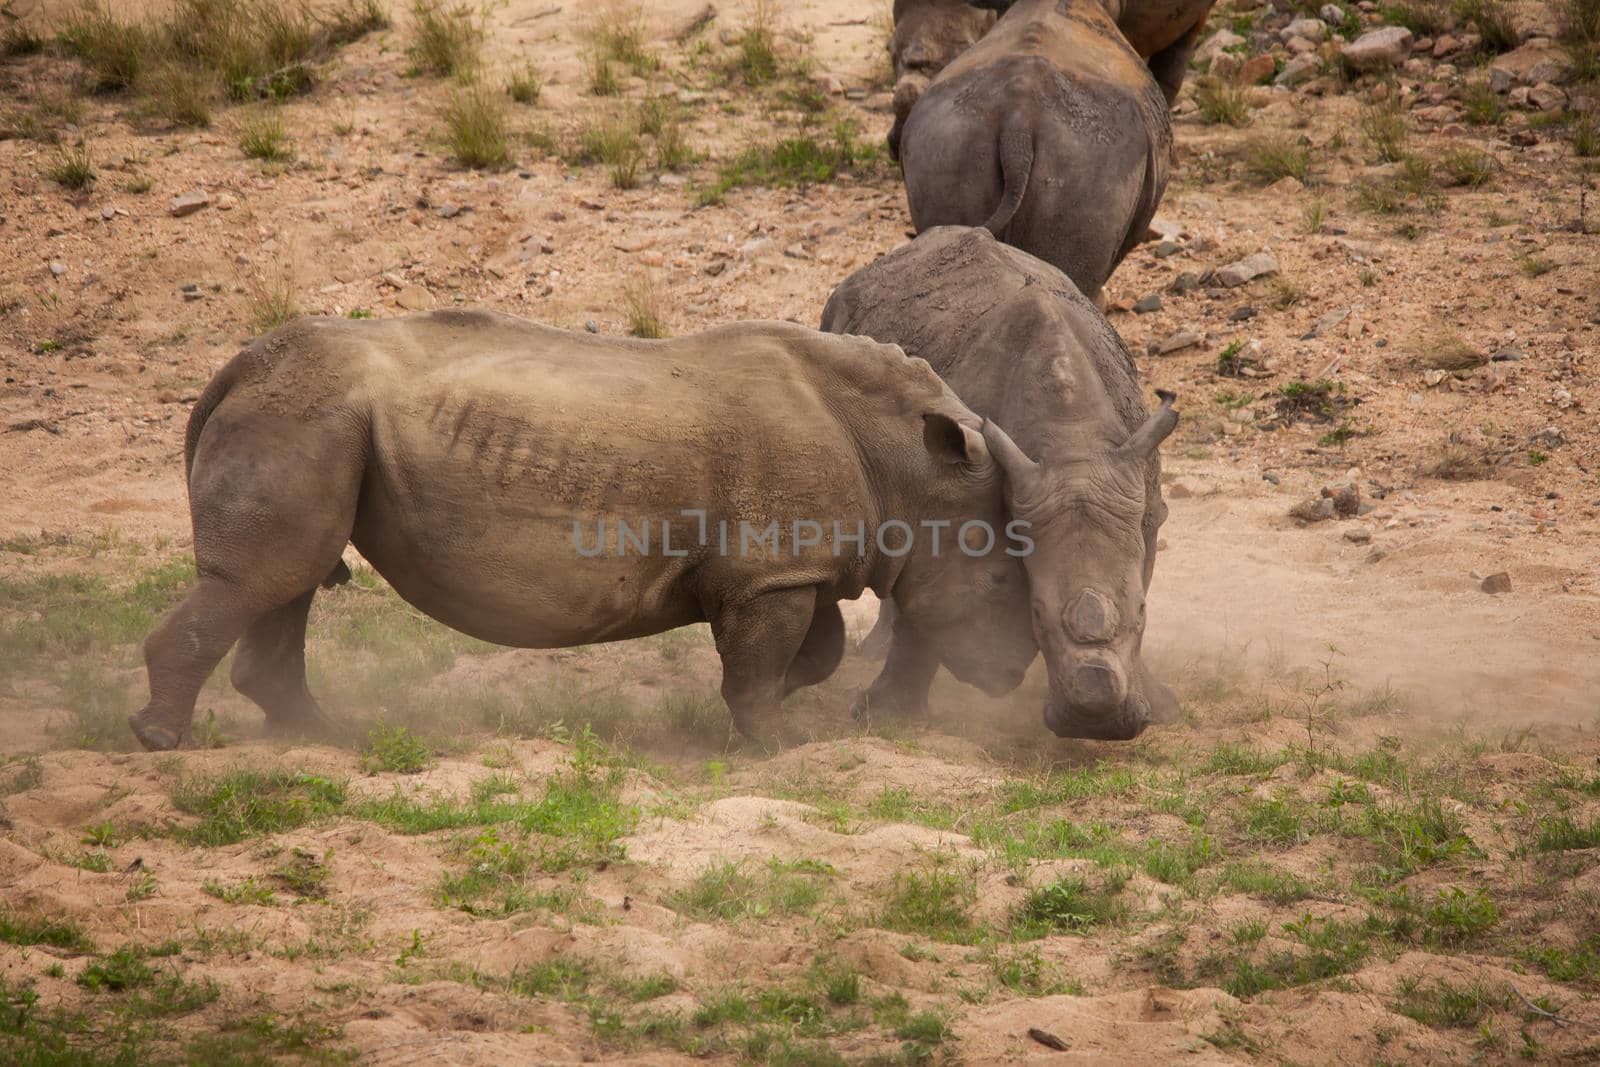 Dehorned White Rhino Ceratotherium simum fighting 14803 by kobus_peche